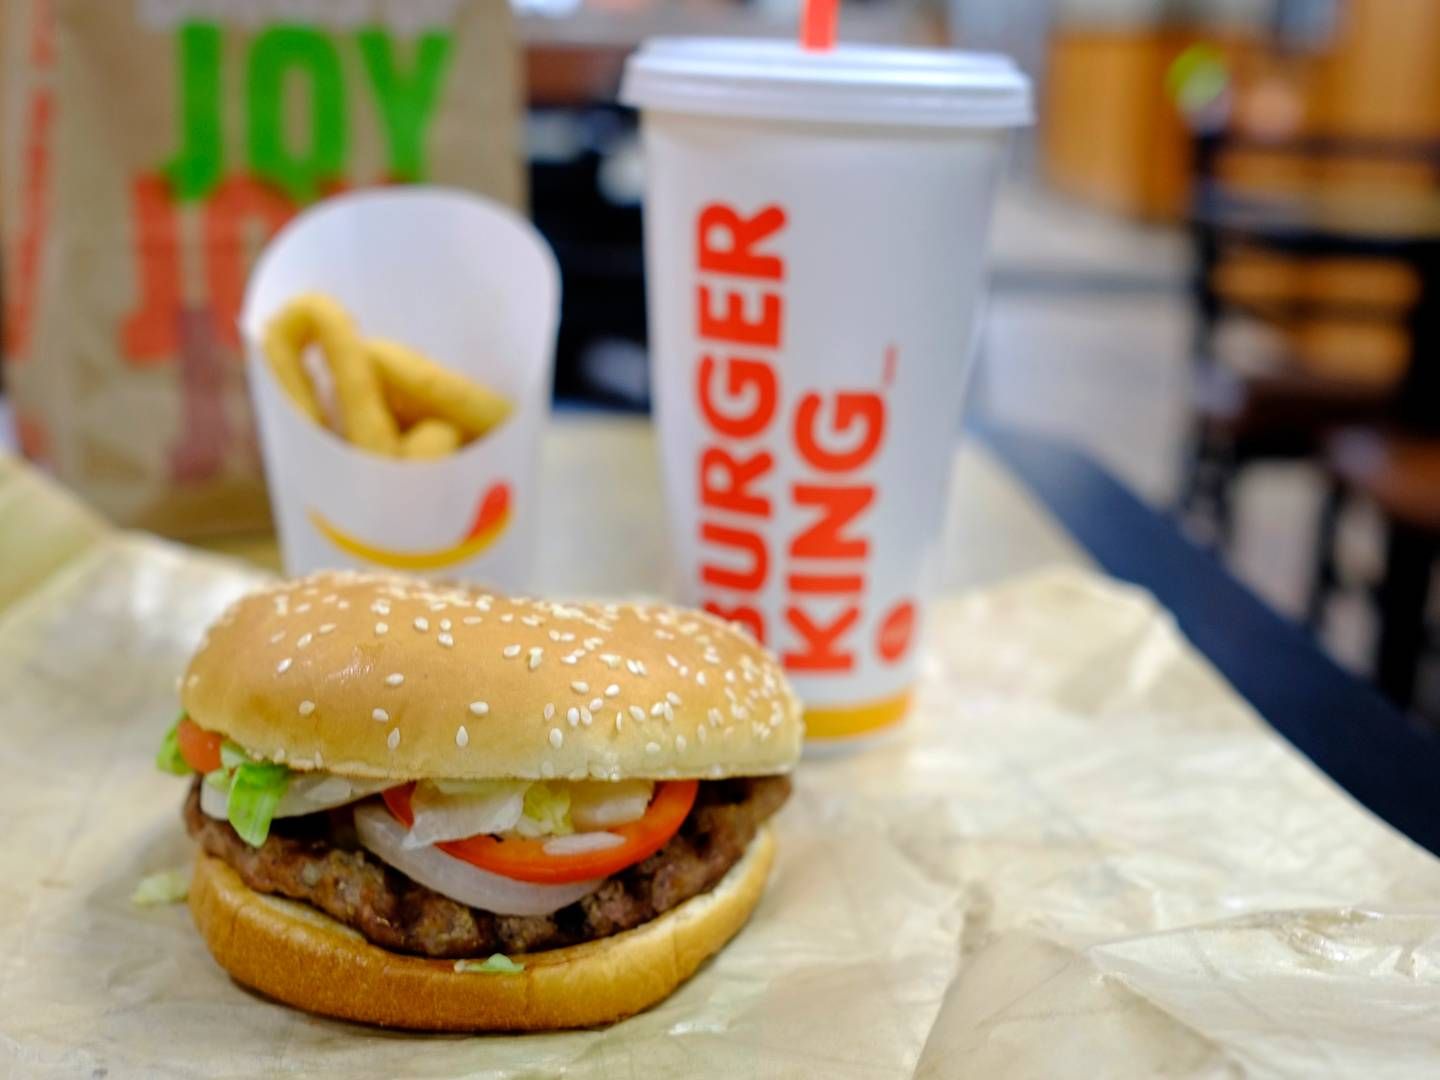 Anklagerne går på, at burgerne ser 35 pct. større ud end som her i en Burger King i byen Charlotte. Foto: Chuck Burton/AP/Ritzau Scanpix